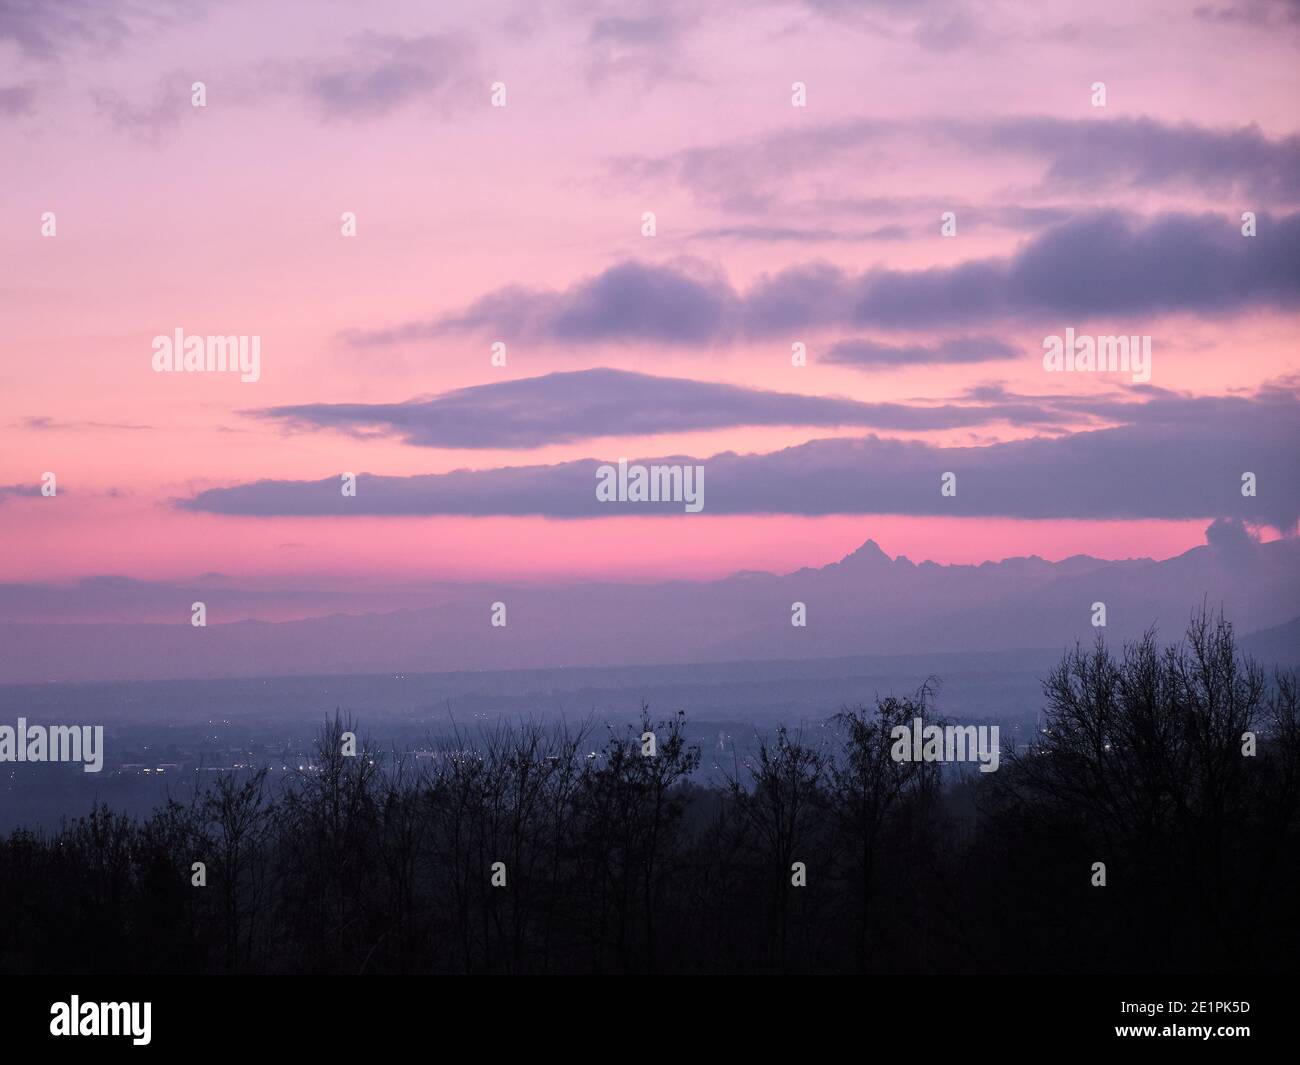 Le profil de l'alp Monviso surplombe la vallée du po immergée dans un ciel rose Banque D'Images